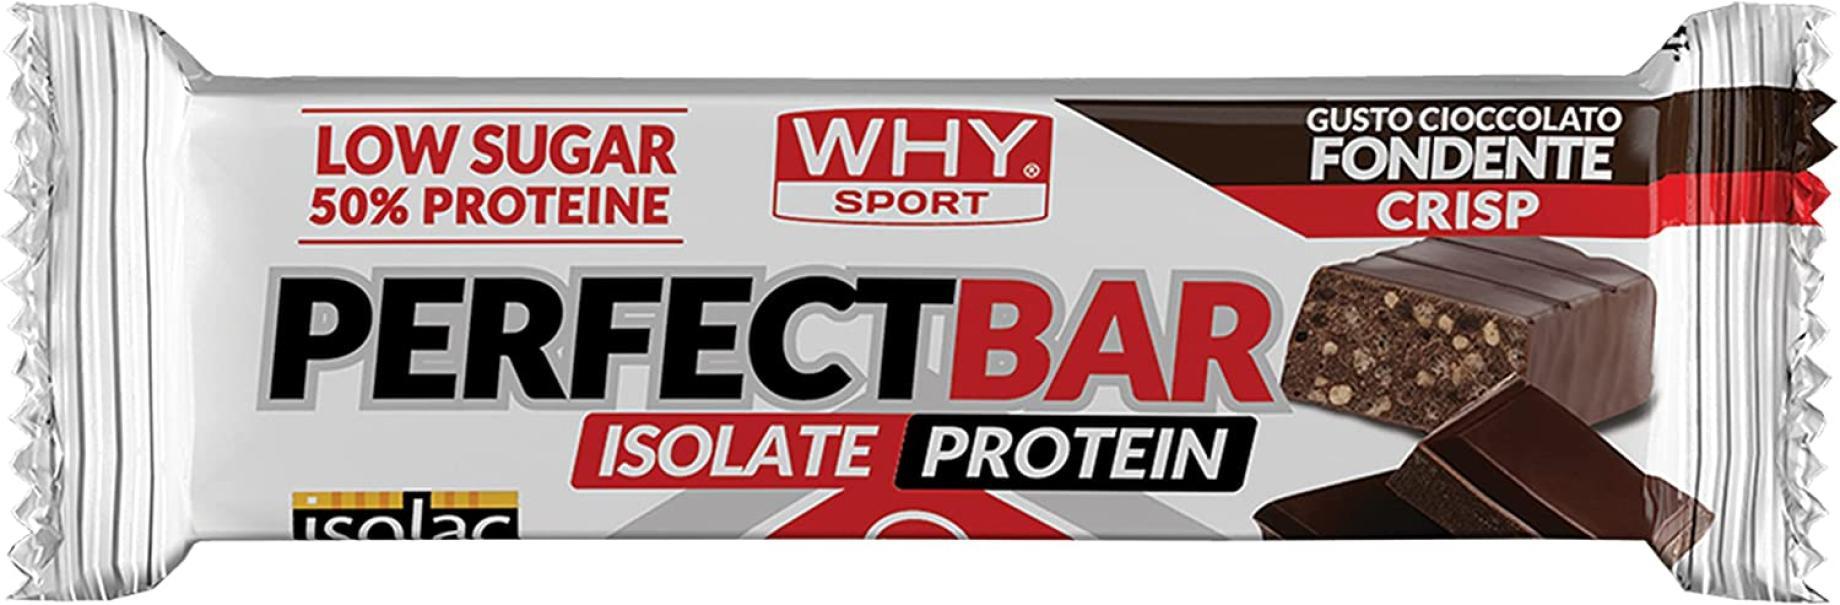 why sport why sport perfect bar - 28 barrette proteiche con proteine isolate - snack proteici - gusto nocciola crisp - 50 gr